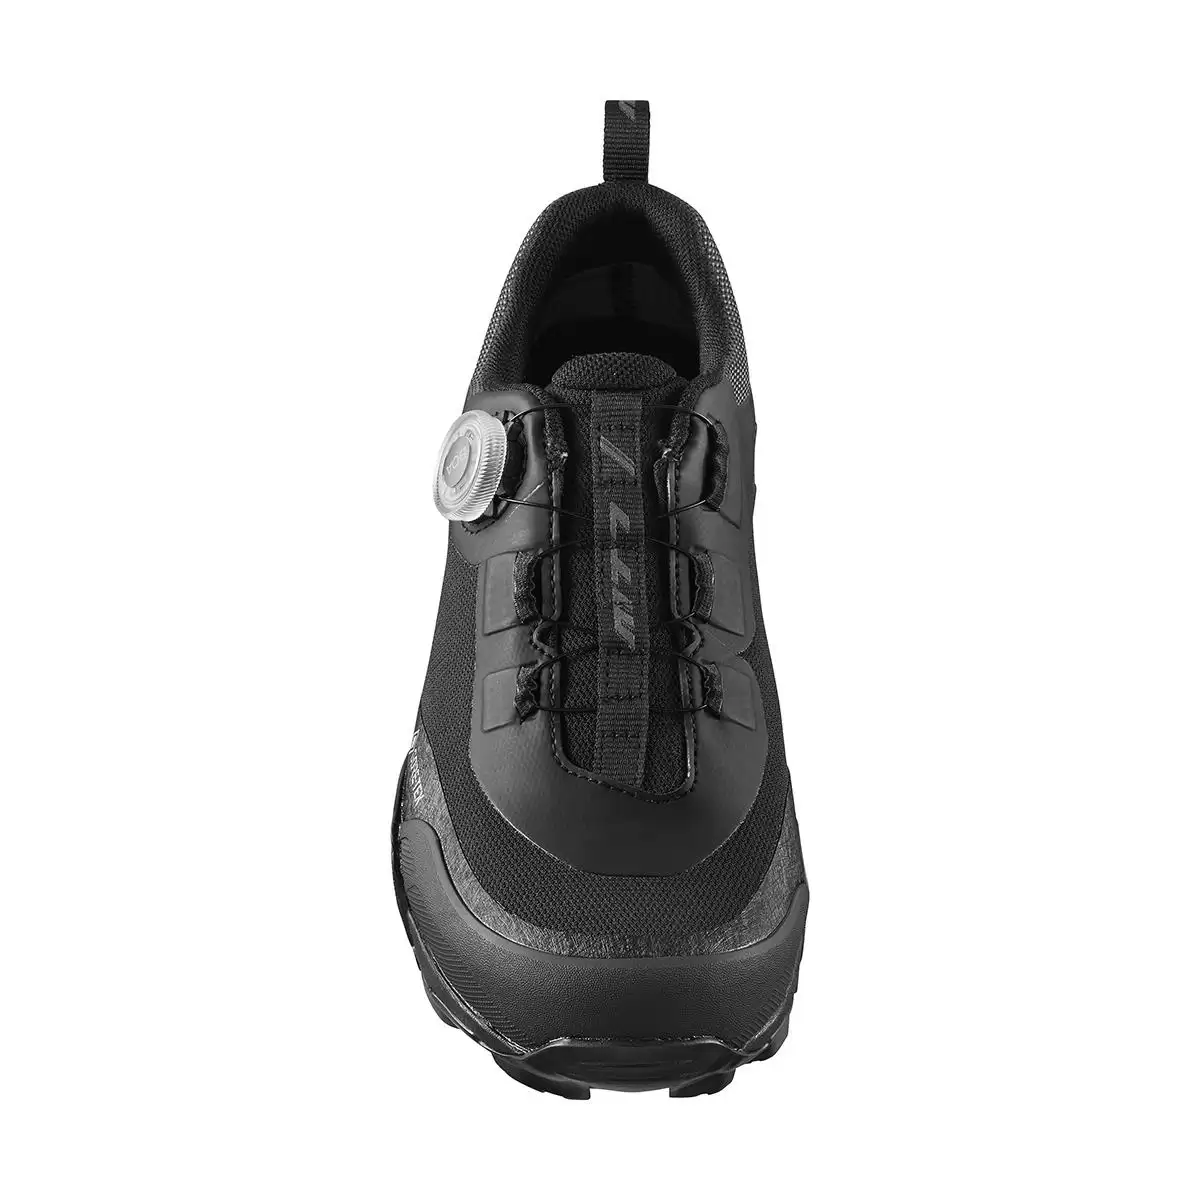 MTB Shoes SH-MT701GTX MT701 Black Size 47 #1